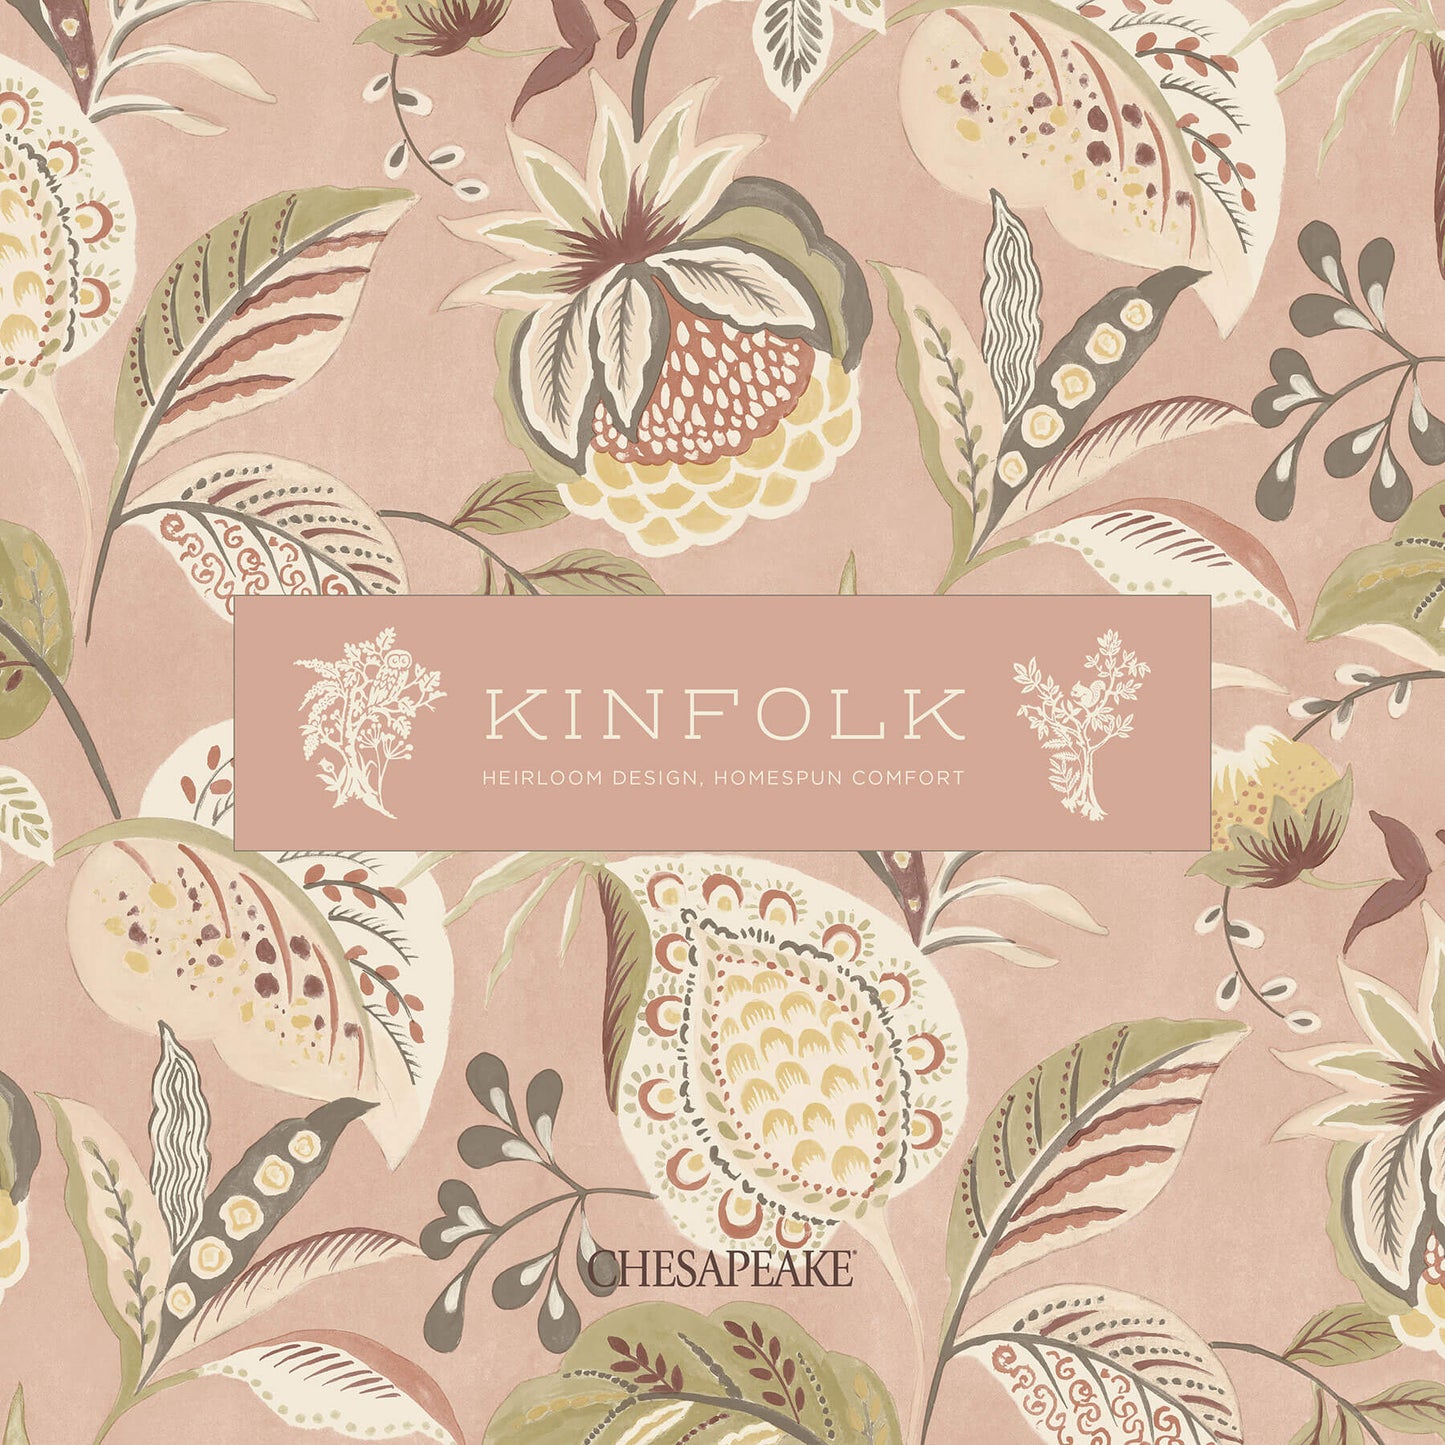 Chesapeake Kinfolk Spinnaker Netting Wallpaper - Peach